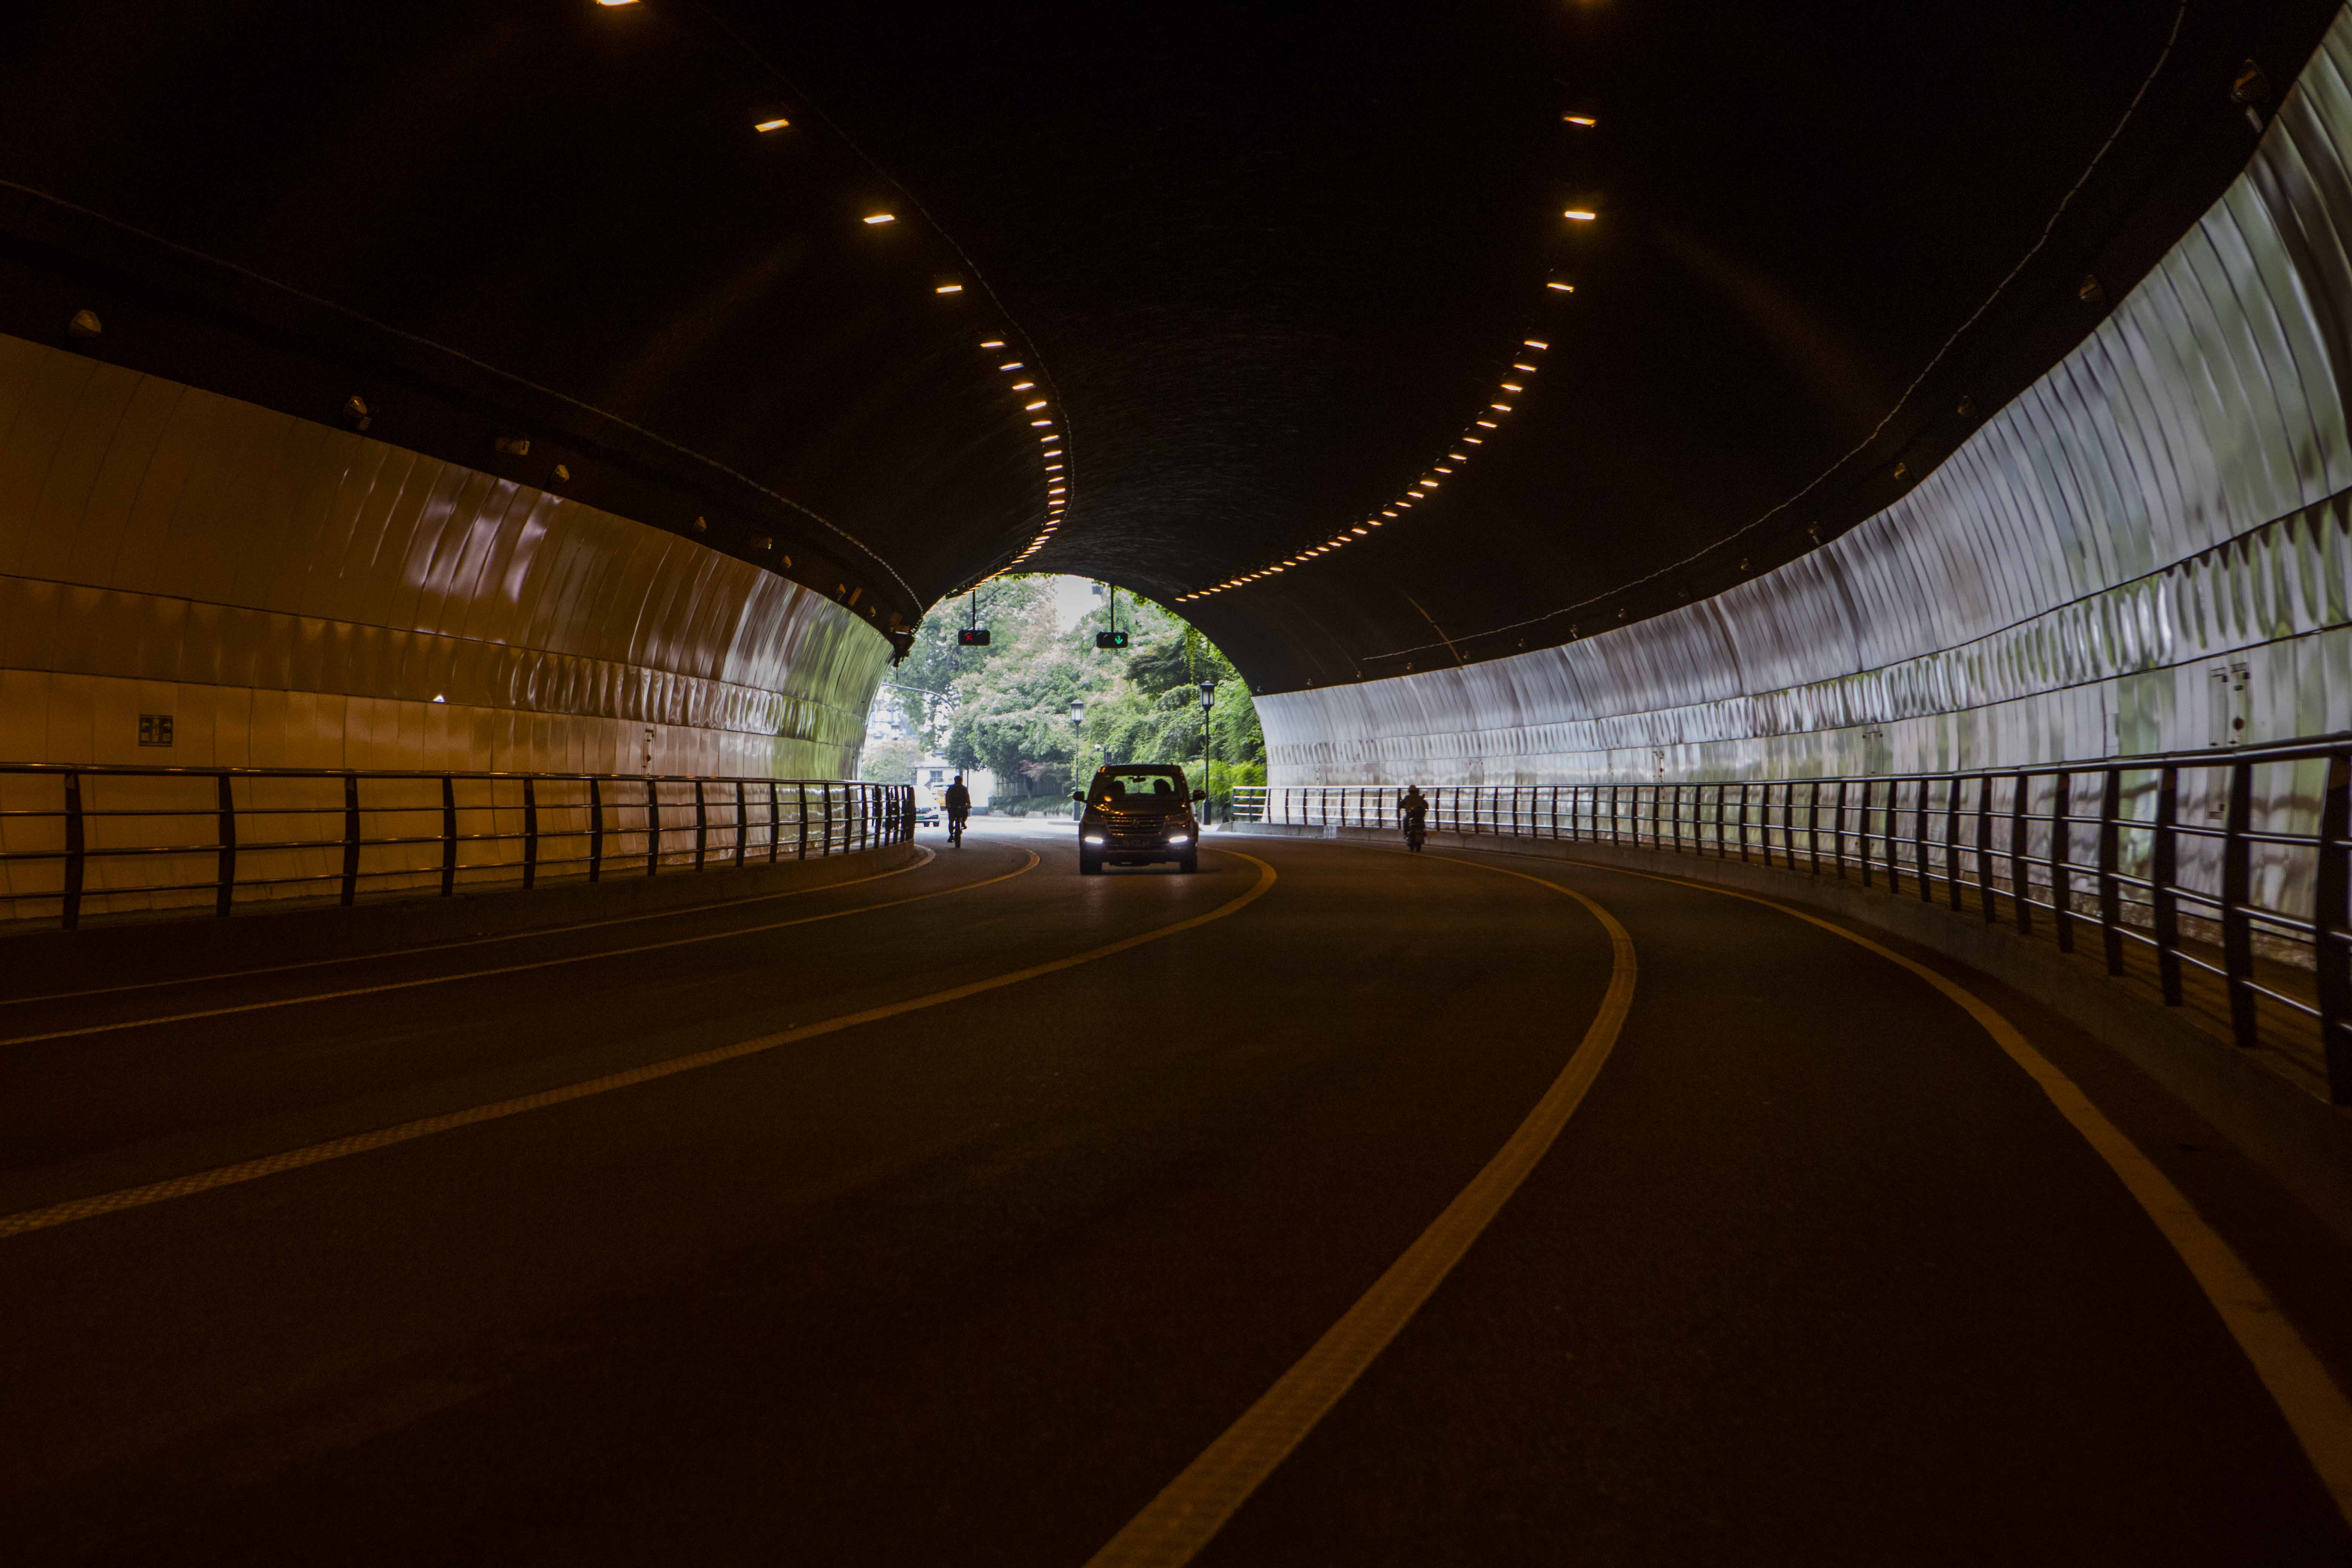 市碓隧道内停留拍照司机认为在人行道上拍照也影响注意力杭州万松岭